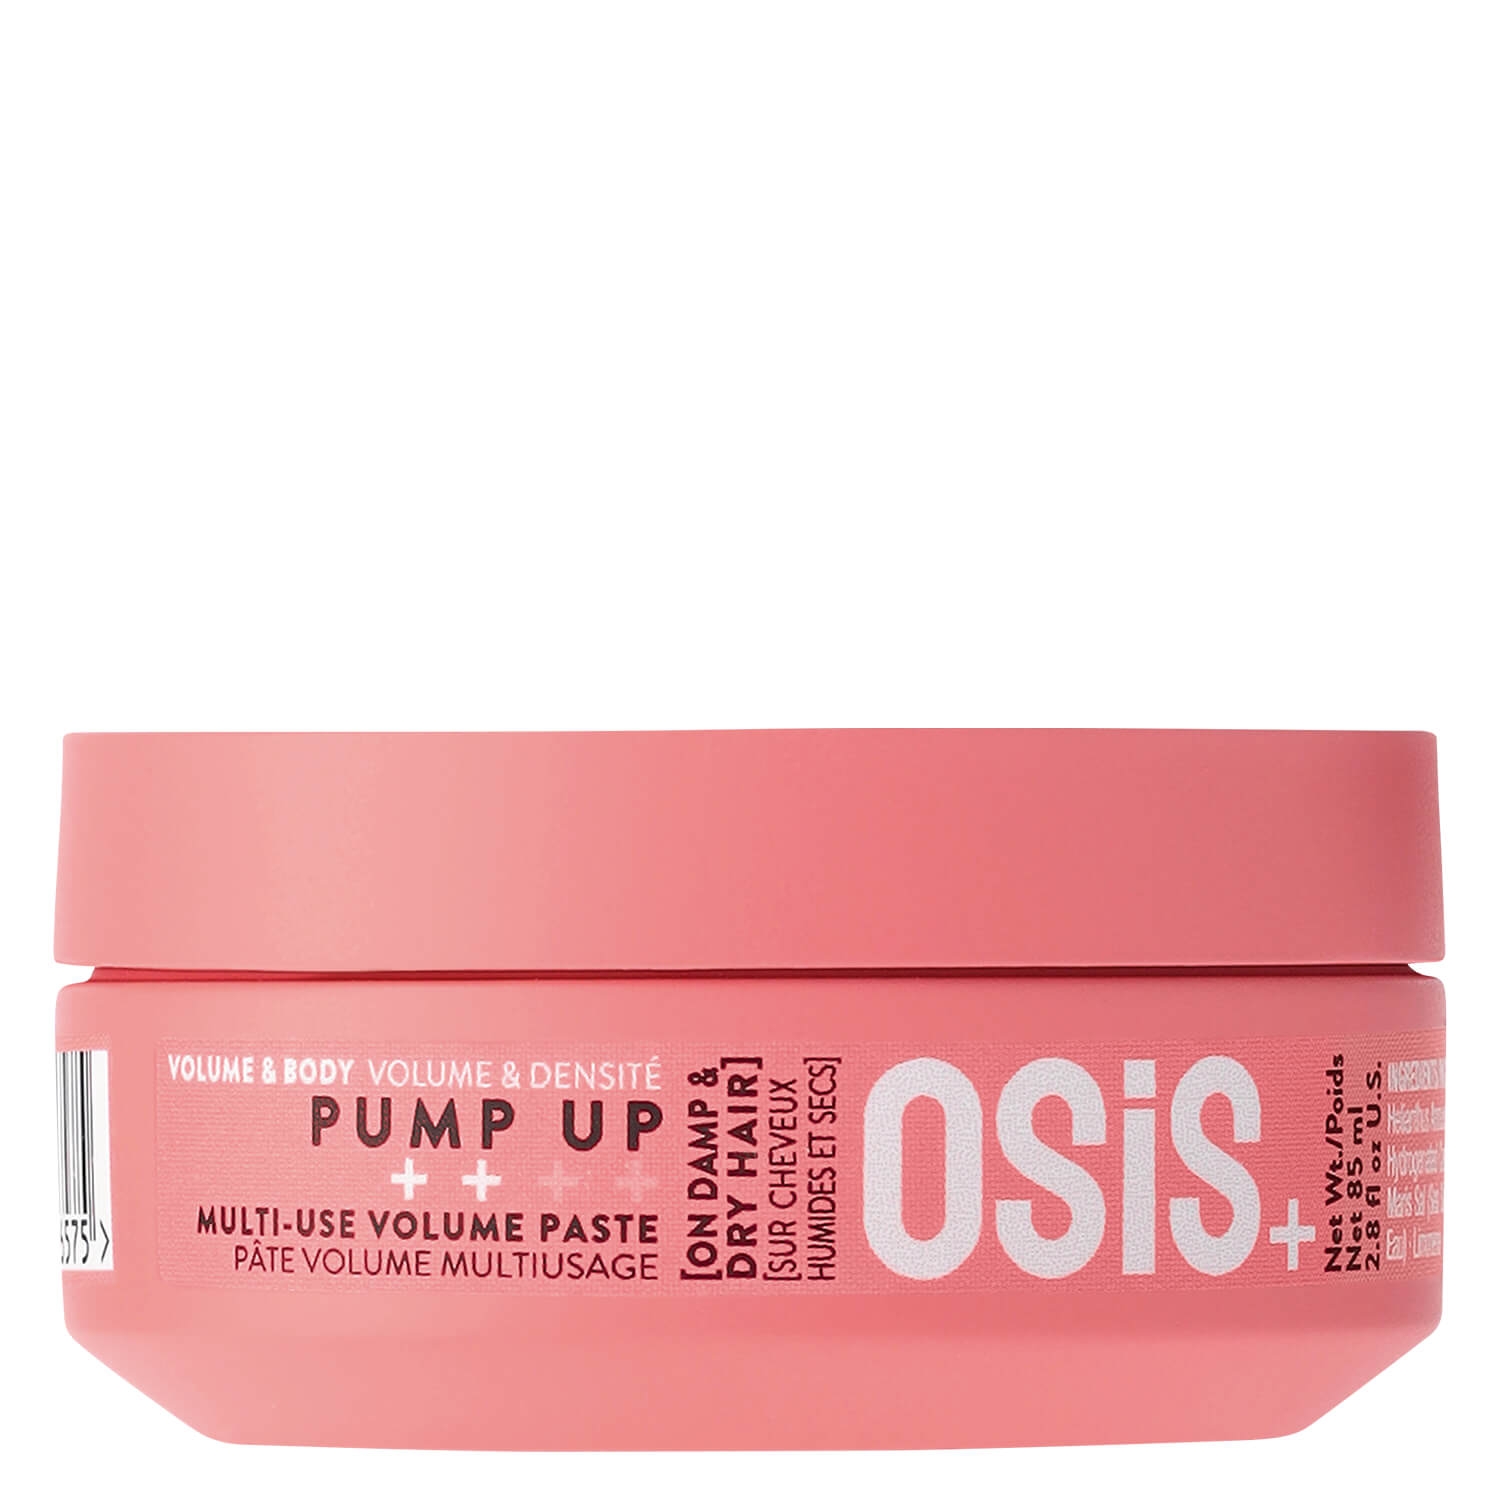 Produktbild von Osis - Pump Up